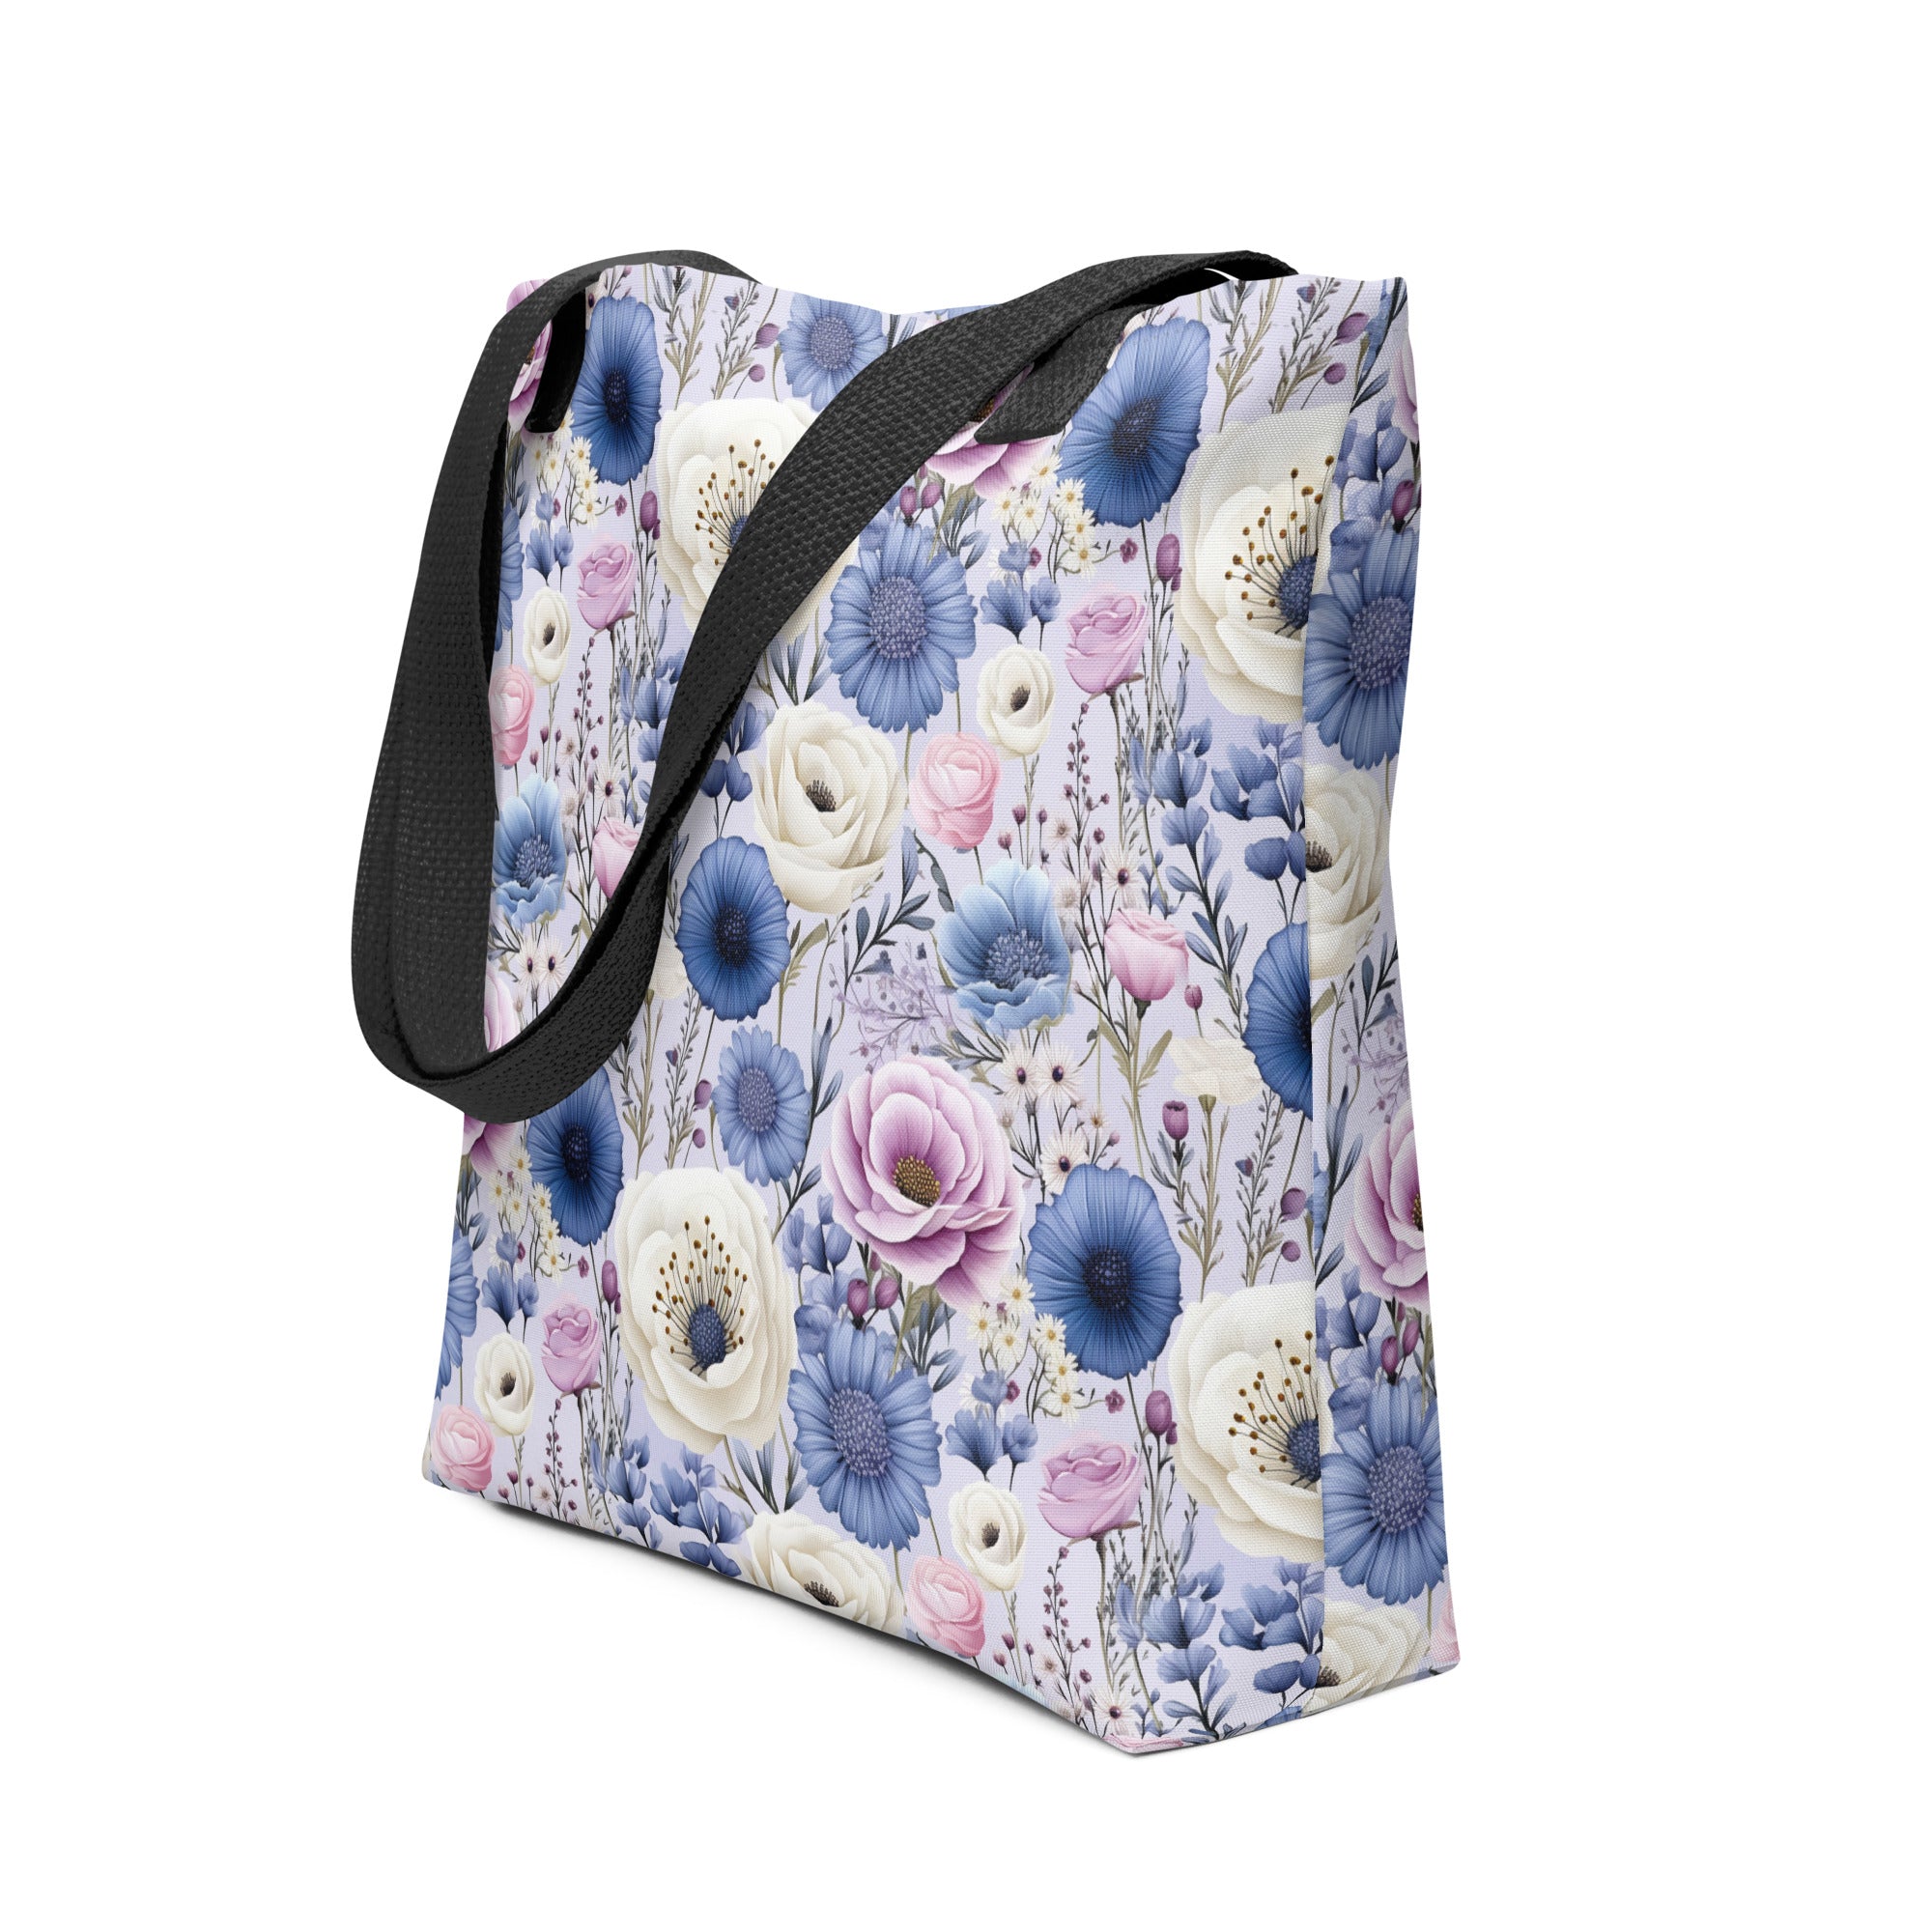 Tote bag- Flower Garden 02